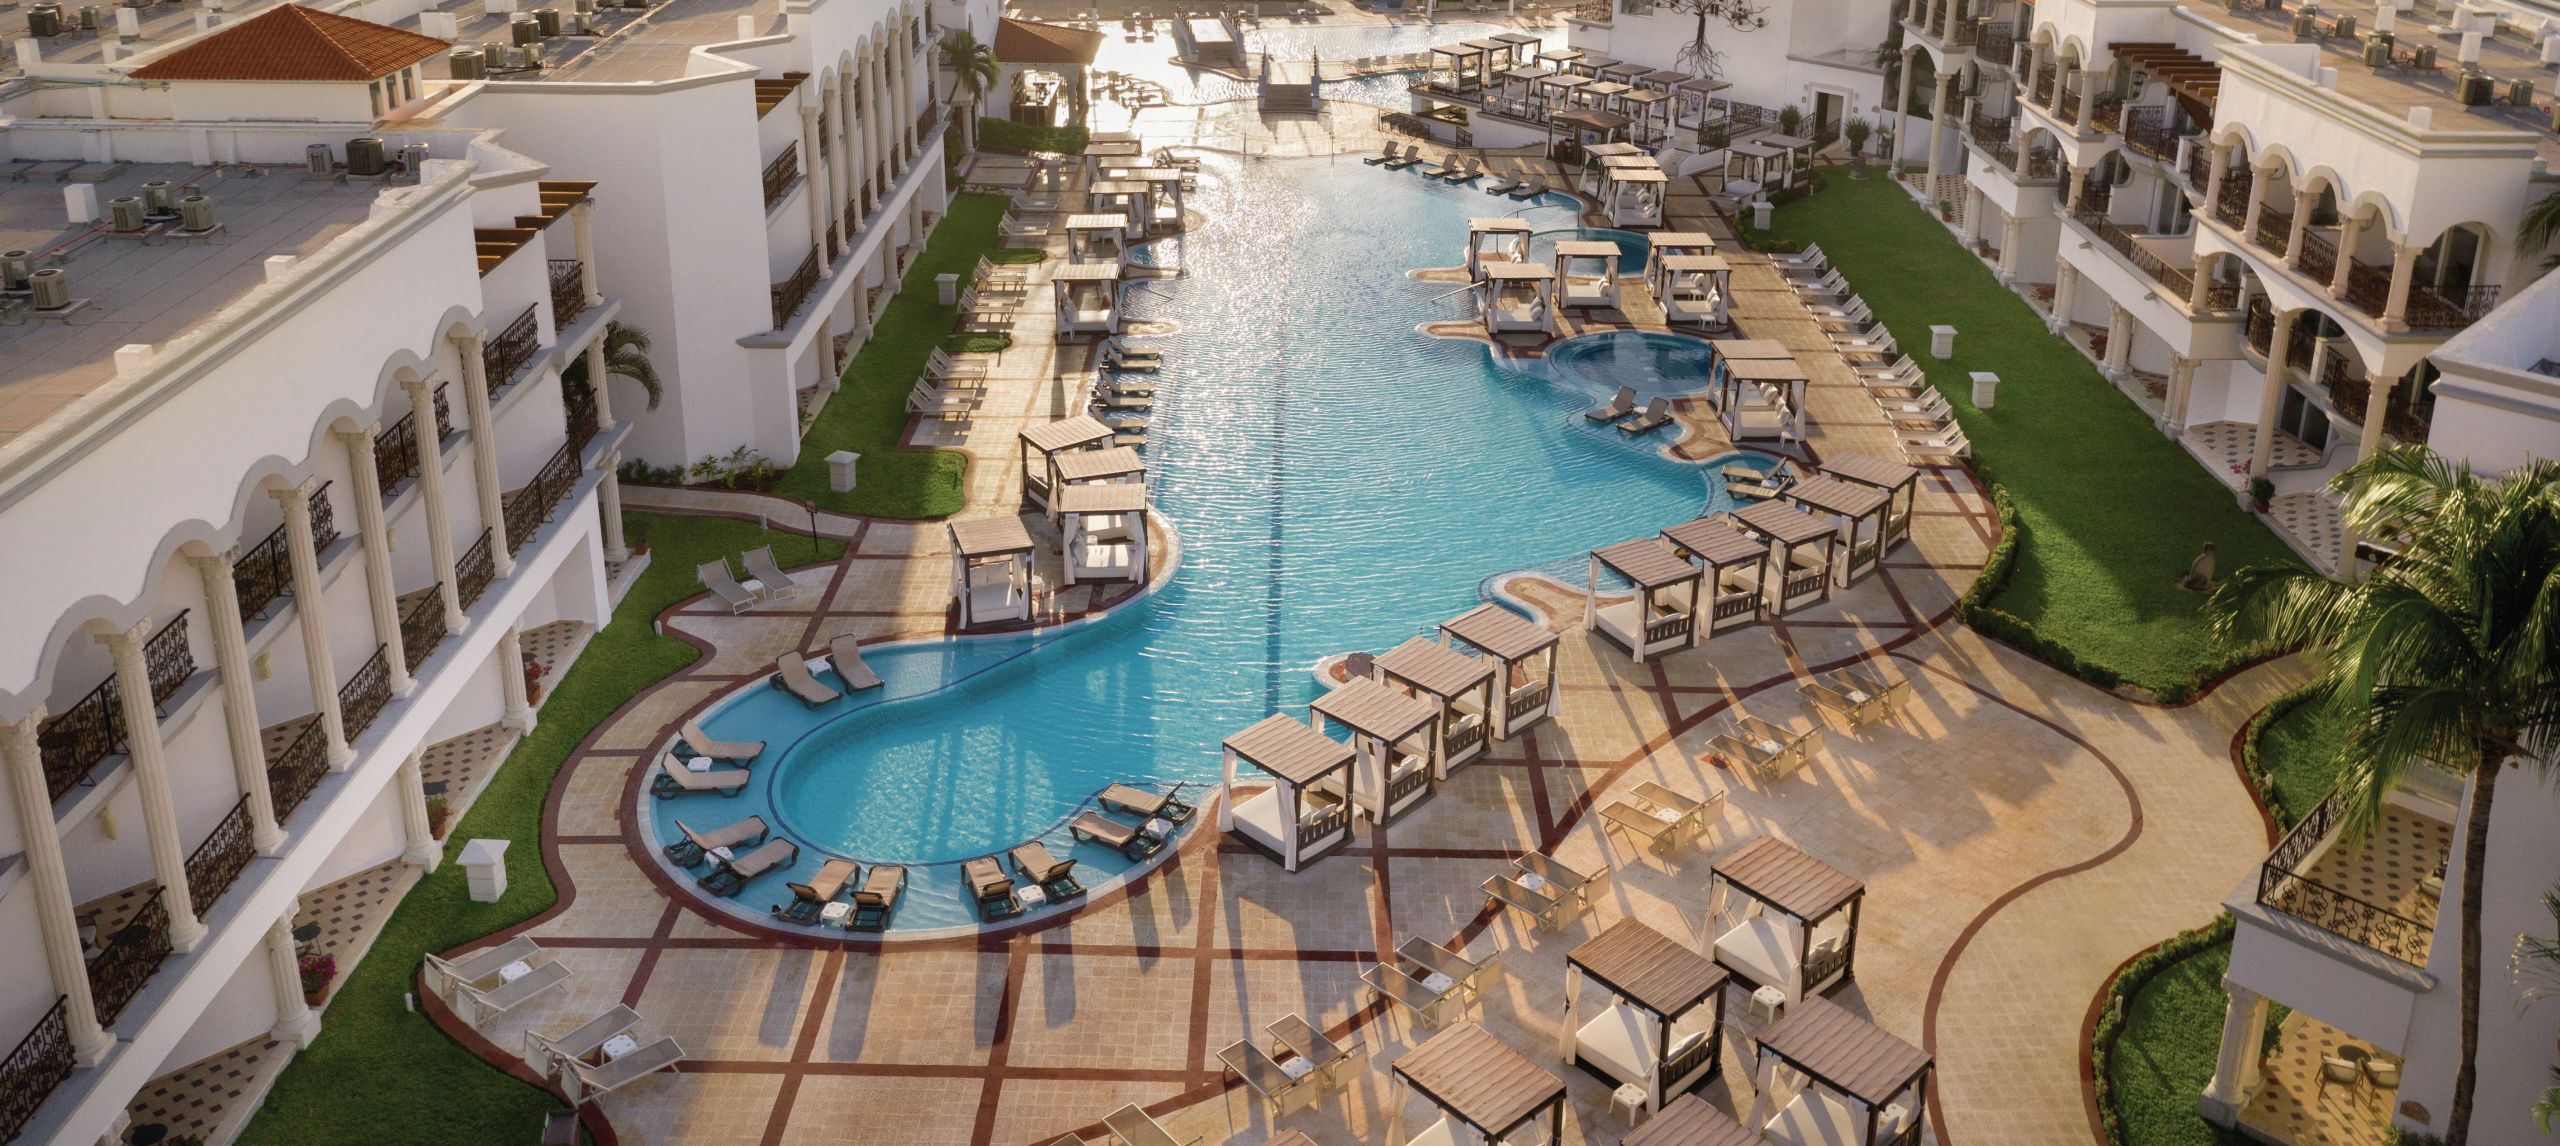 Vista aérea de la fachada del hotel con una amplia piscina